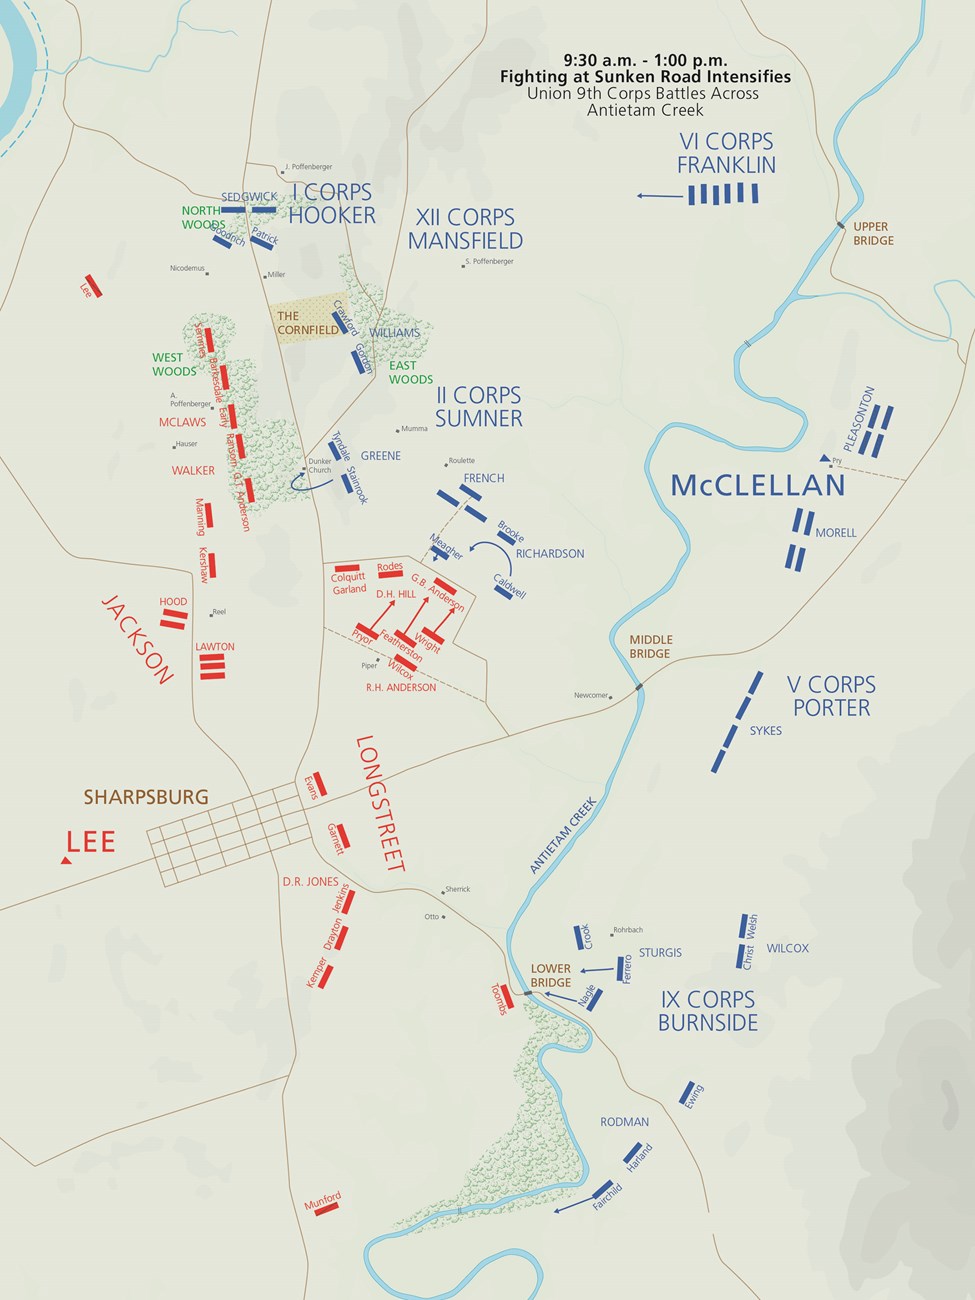 Antietam Battle Map 9:30 am-1:00 pm